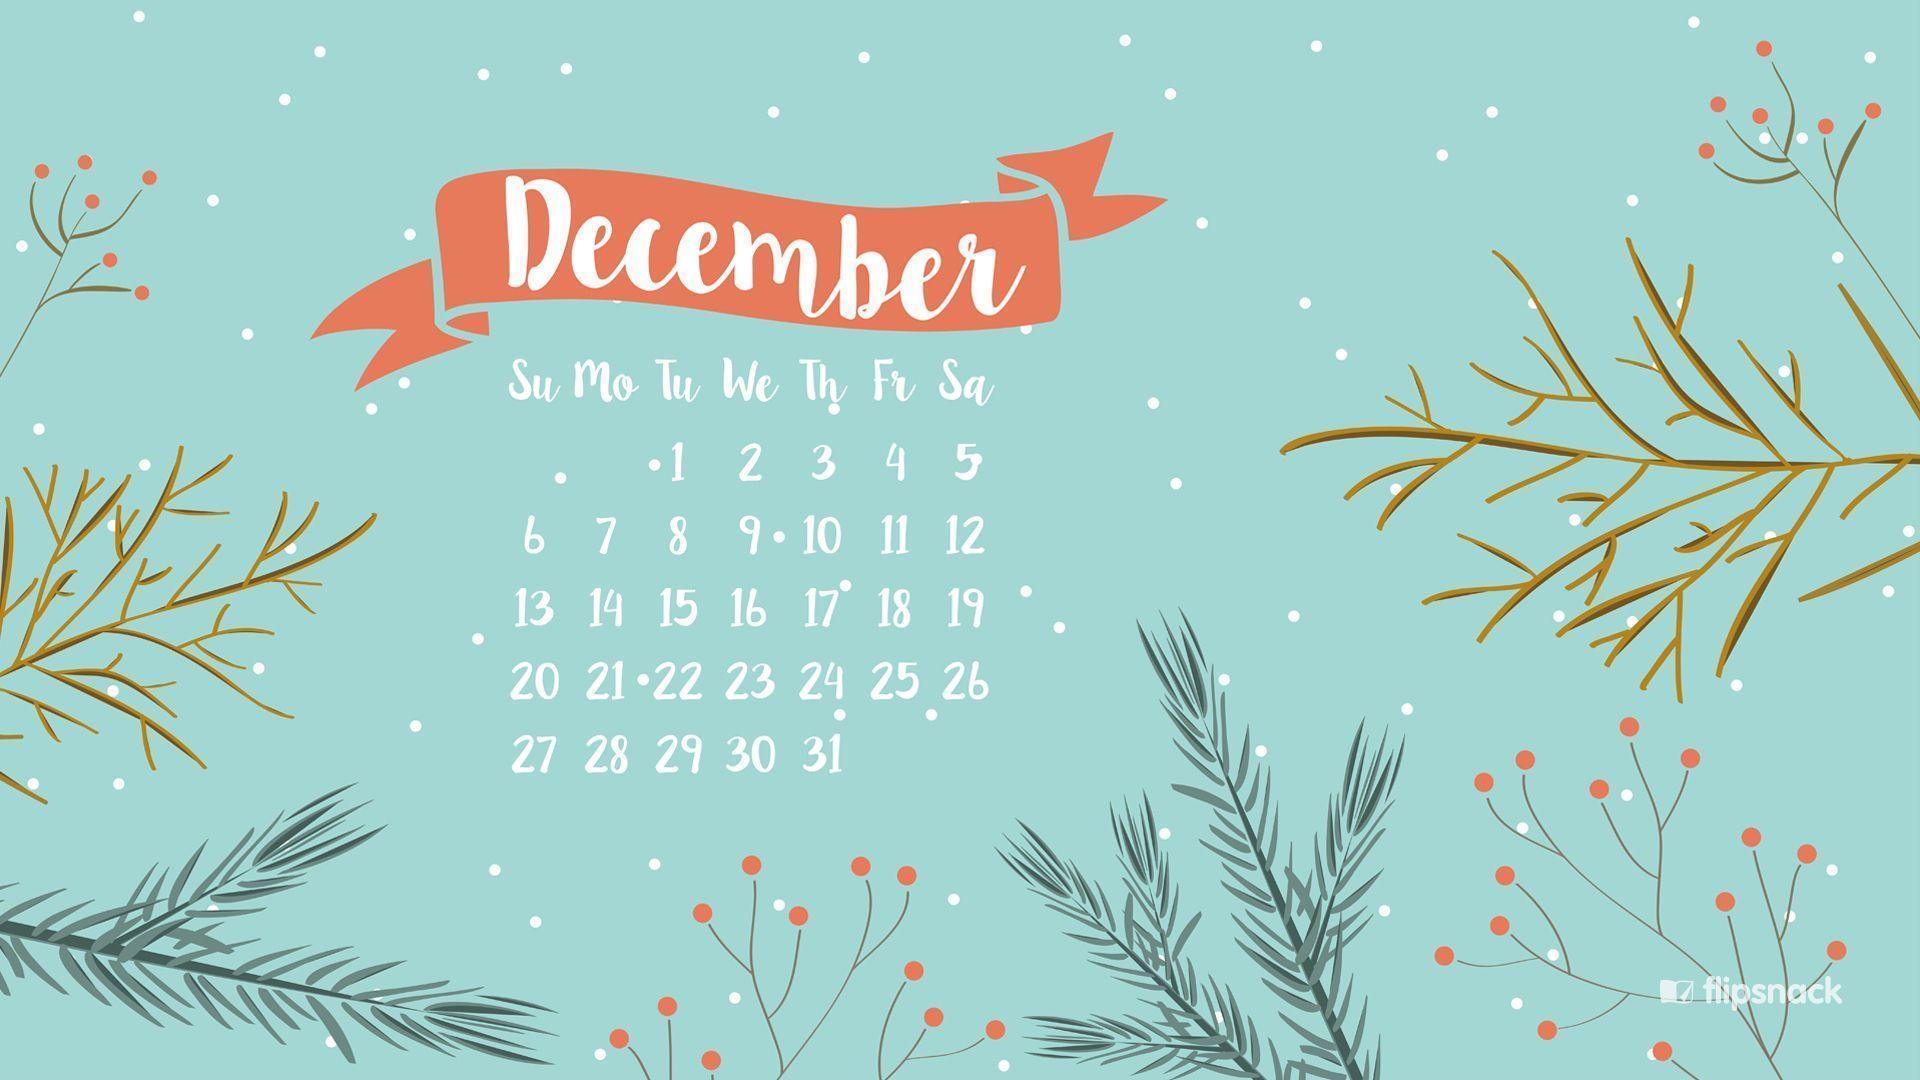 Freebies: December 2015 wallpaper calendars